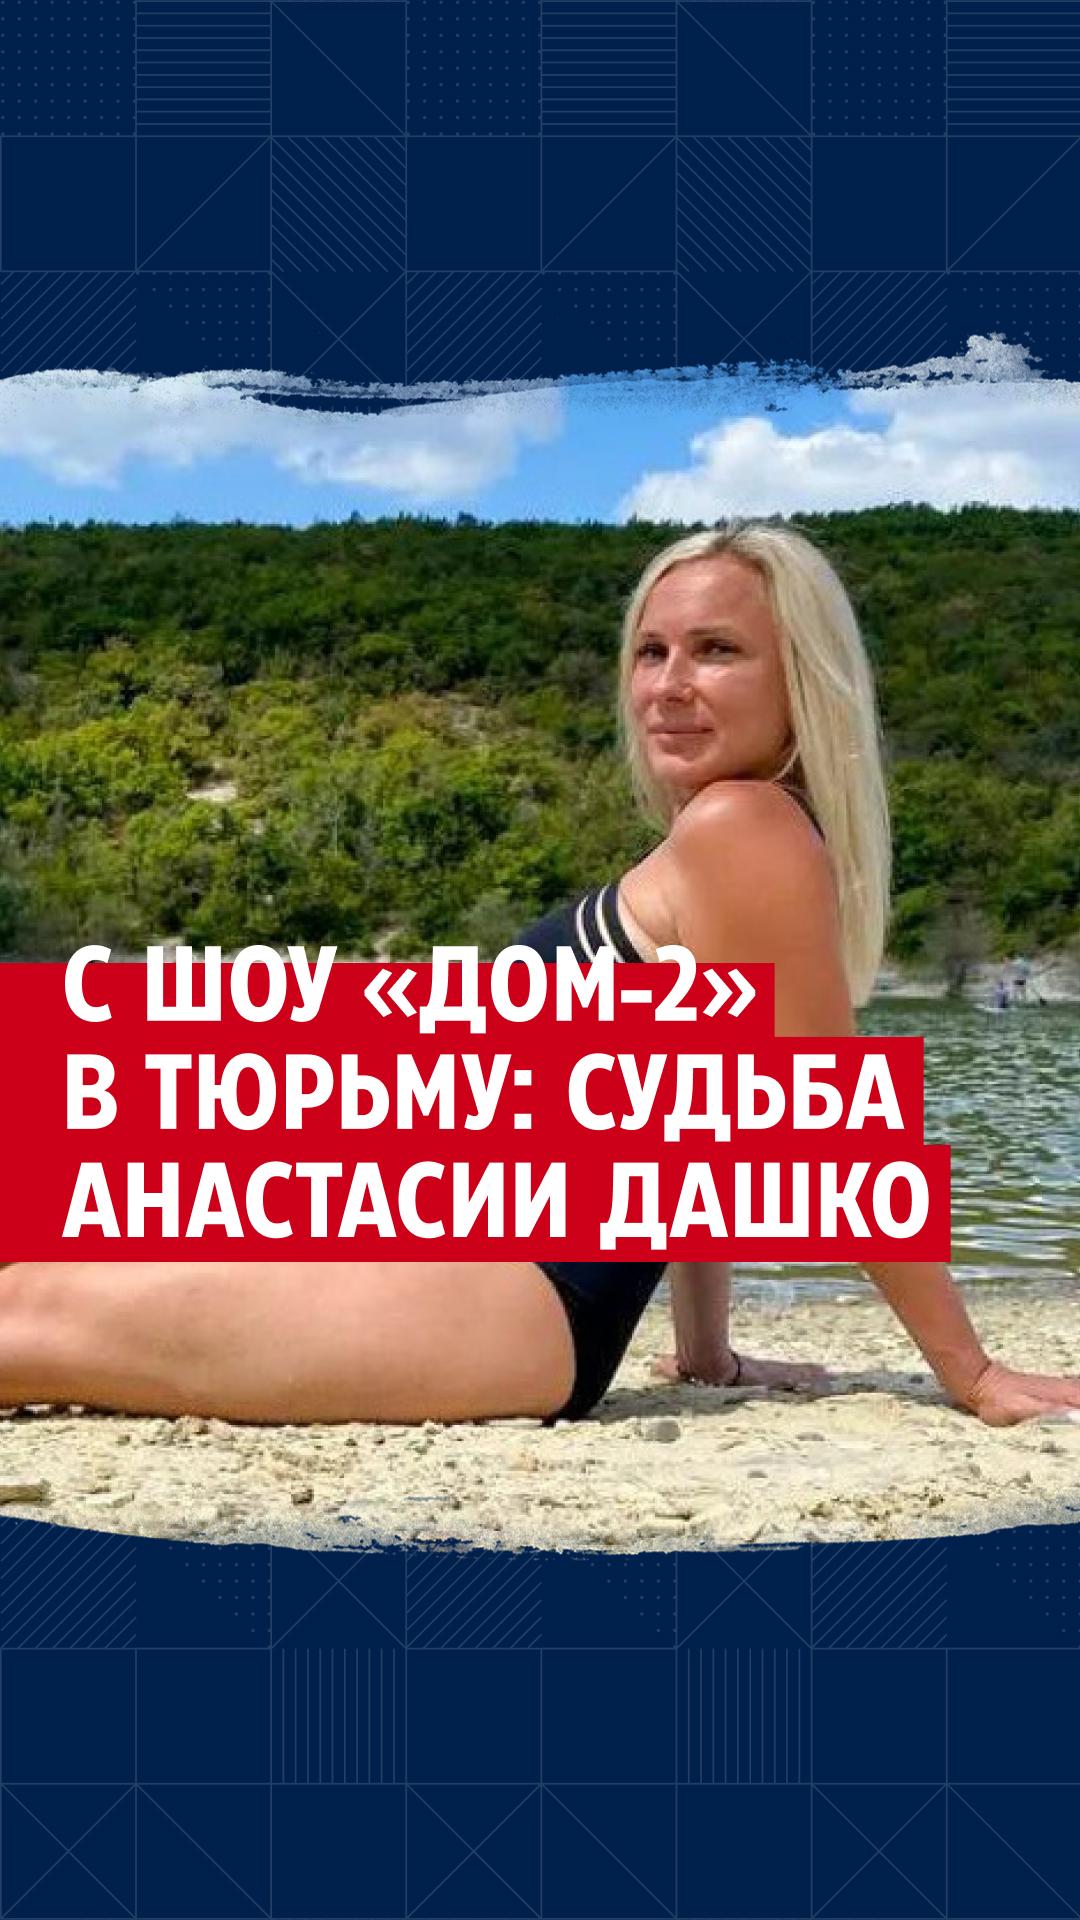 Анастасия дашко голая порно видео на arnoldrak-spb.ru